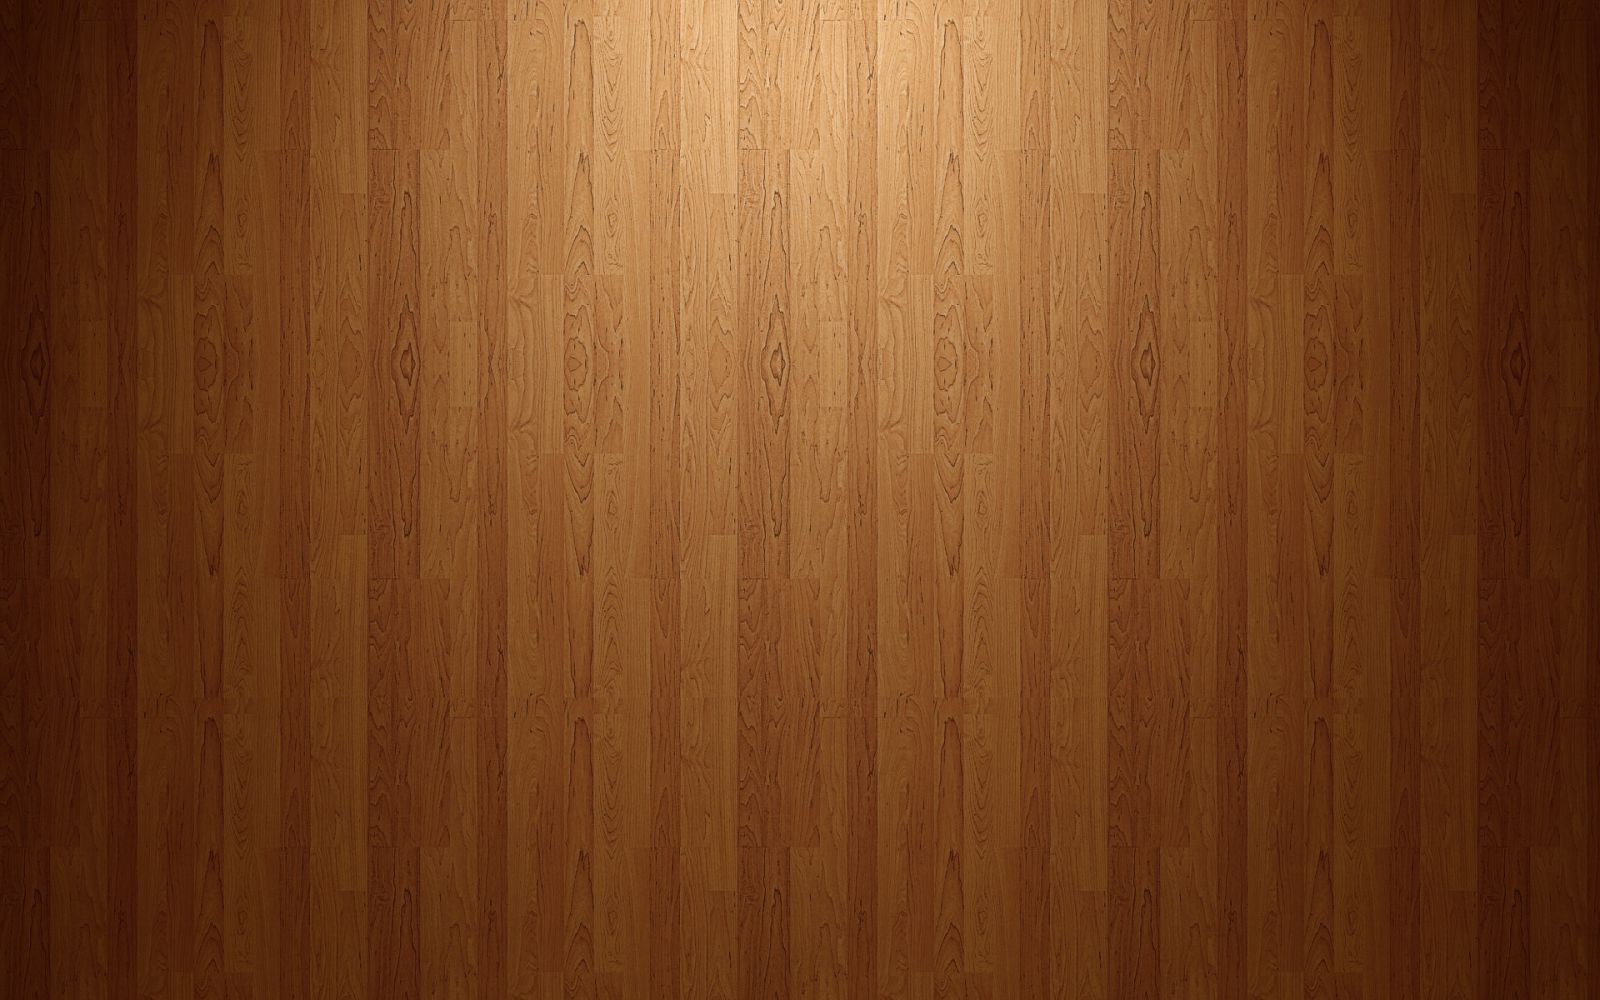 gradient wood floor